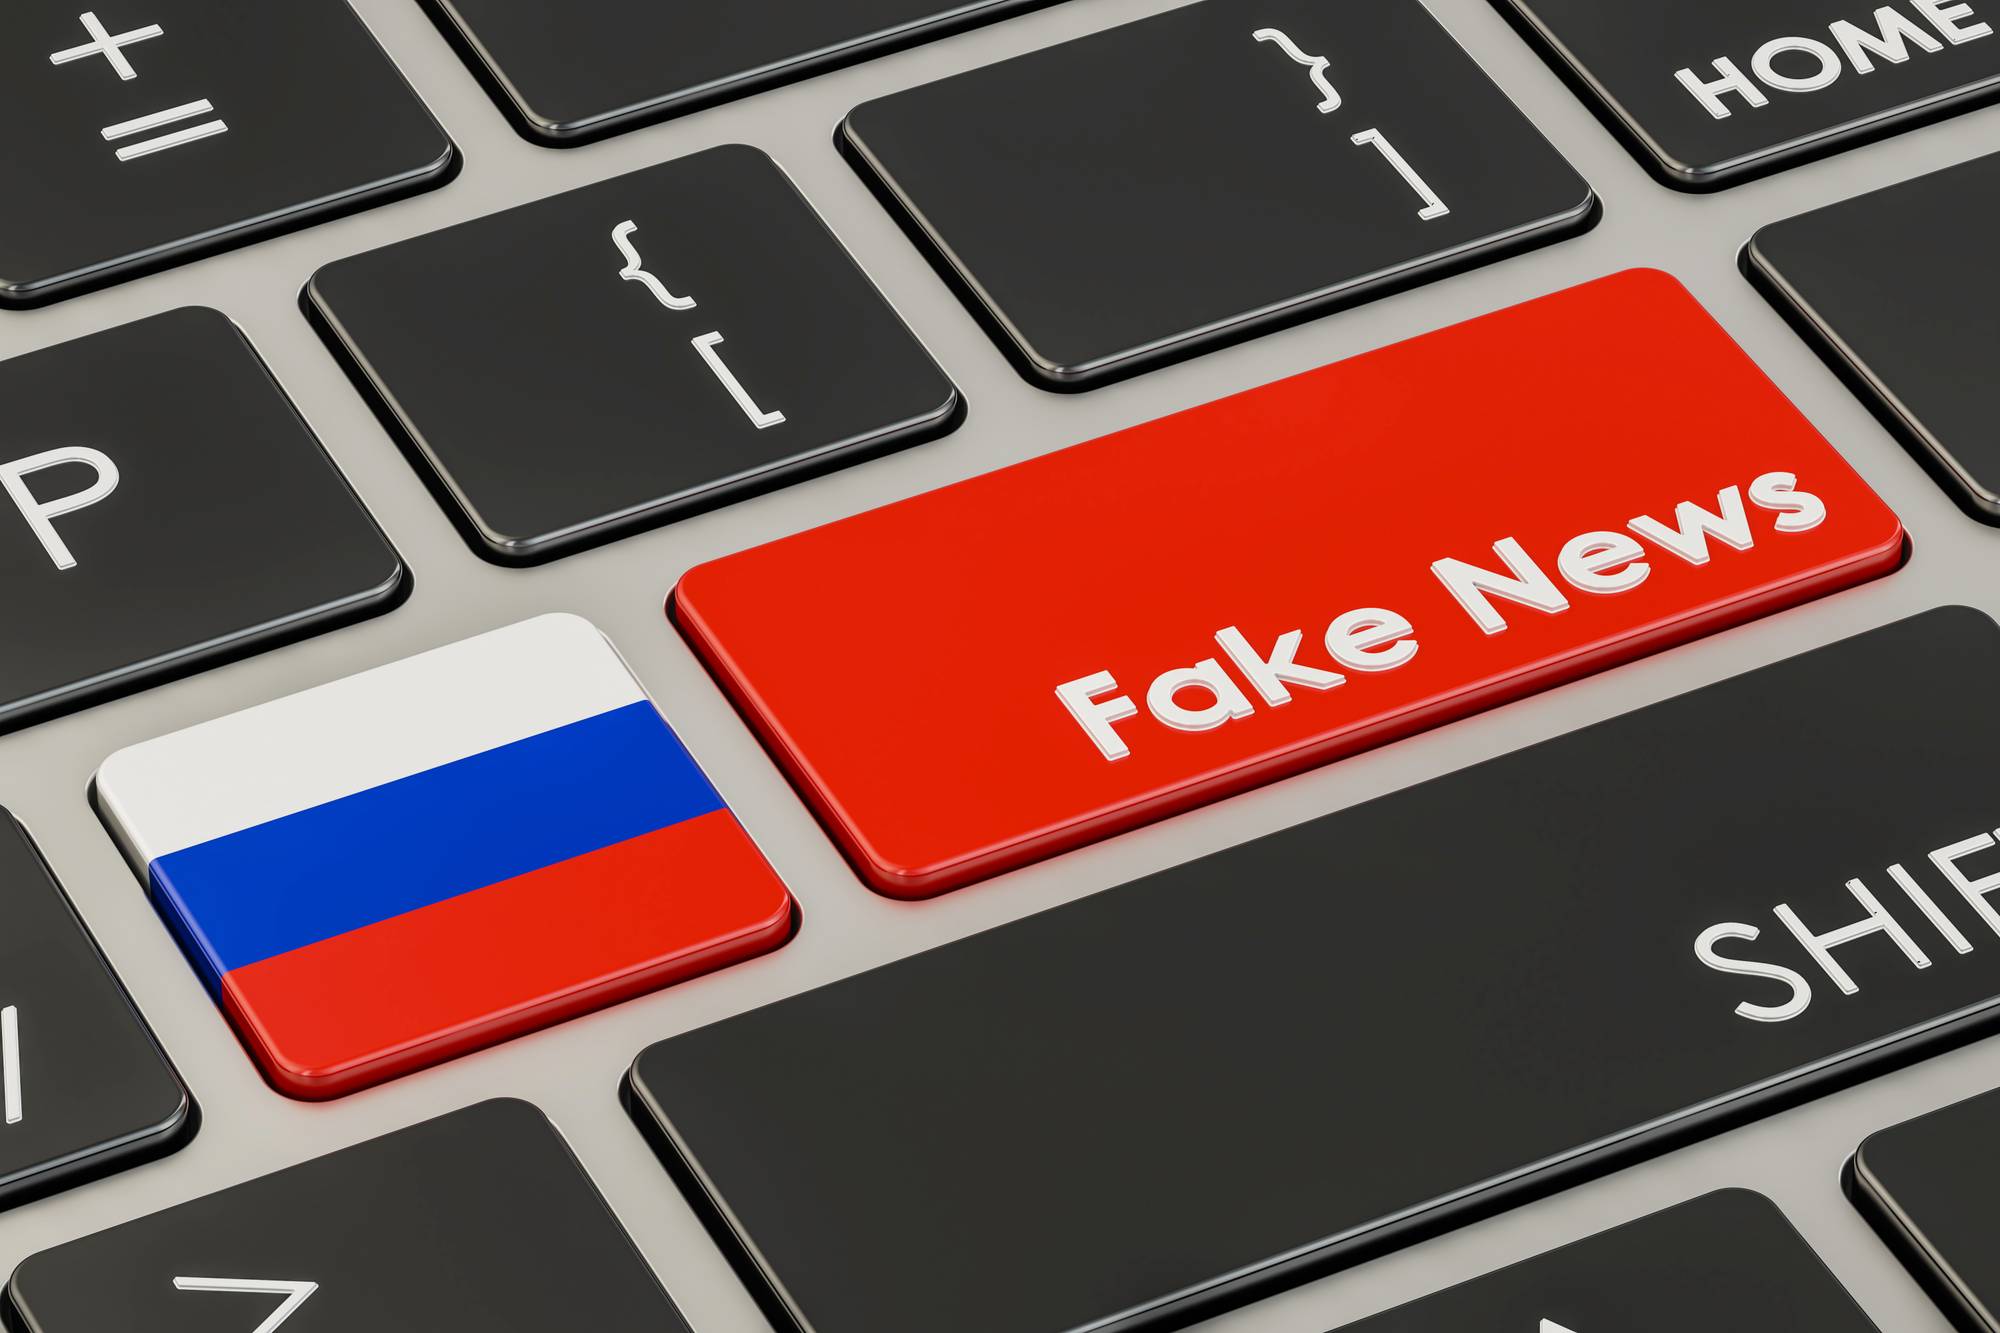 Руска дезинформация и фалшиви новини